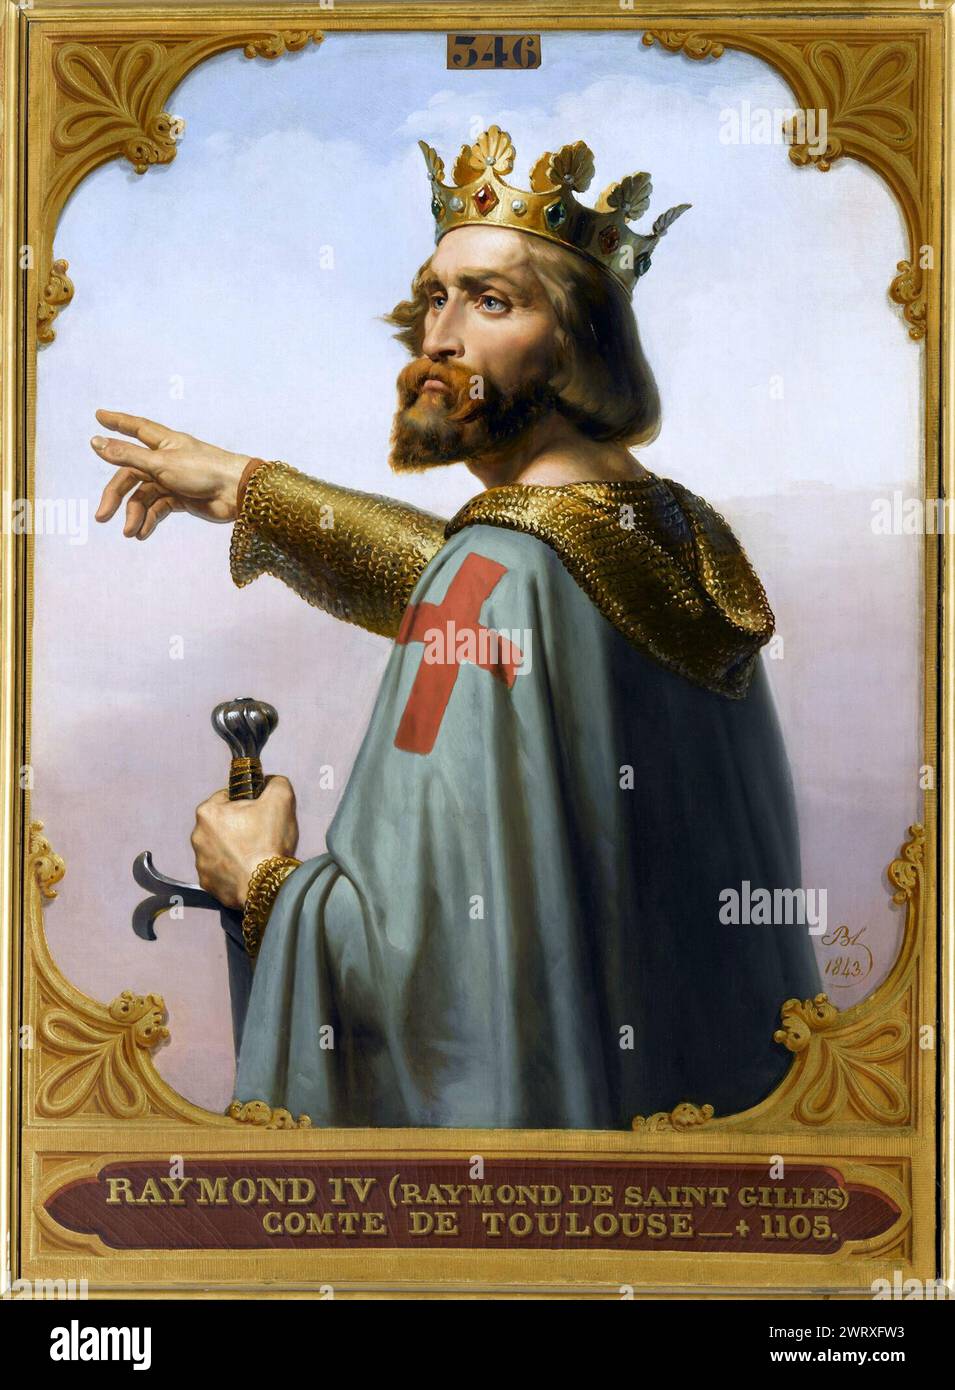 Raimondo di Saint-Gilles (1041 – 1105), Raimondo IV di Tolosa o Raimondo i di Tripoli, conte di Tolosa, duca di Narbona, e uno dei capi della prima crociata dal 1096 al 1099. Rappresentazione del XIX secolo di Raimondo IV, conte di Tolosa di Merry-Joseph Blondel. Foto Stock